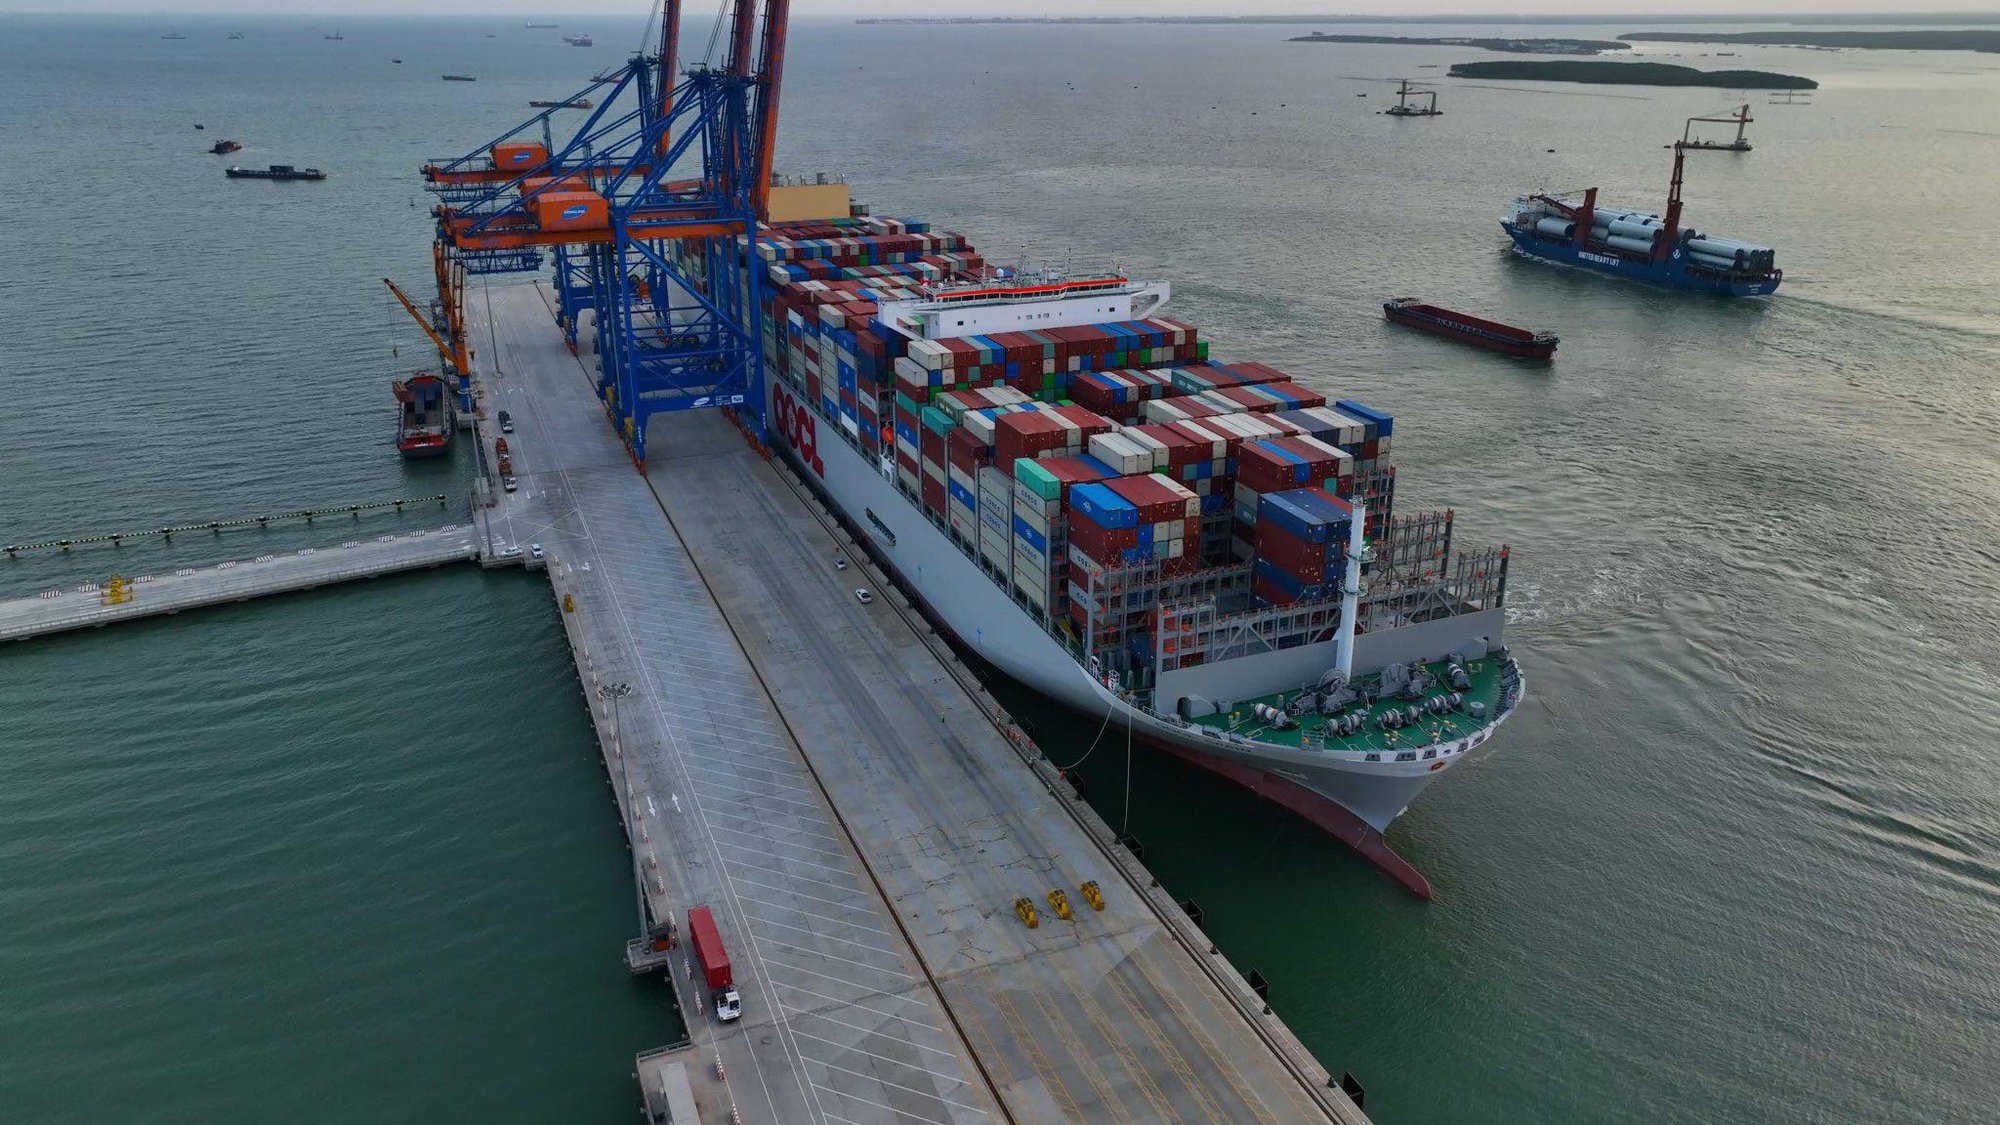 Cận cảnh siêu tàu container lớn nhất thế giới tại Bà Rịa - Vũng Tàu - Ảnh 1.